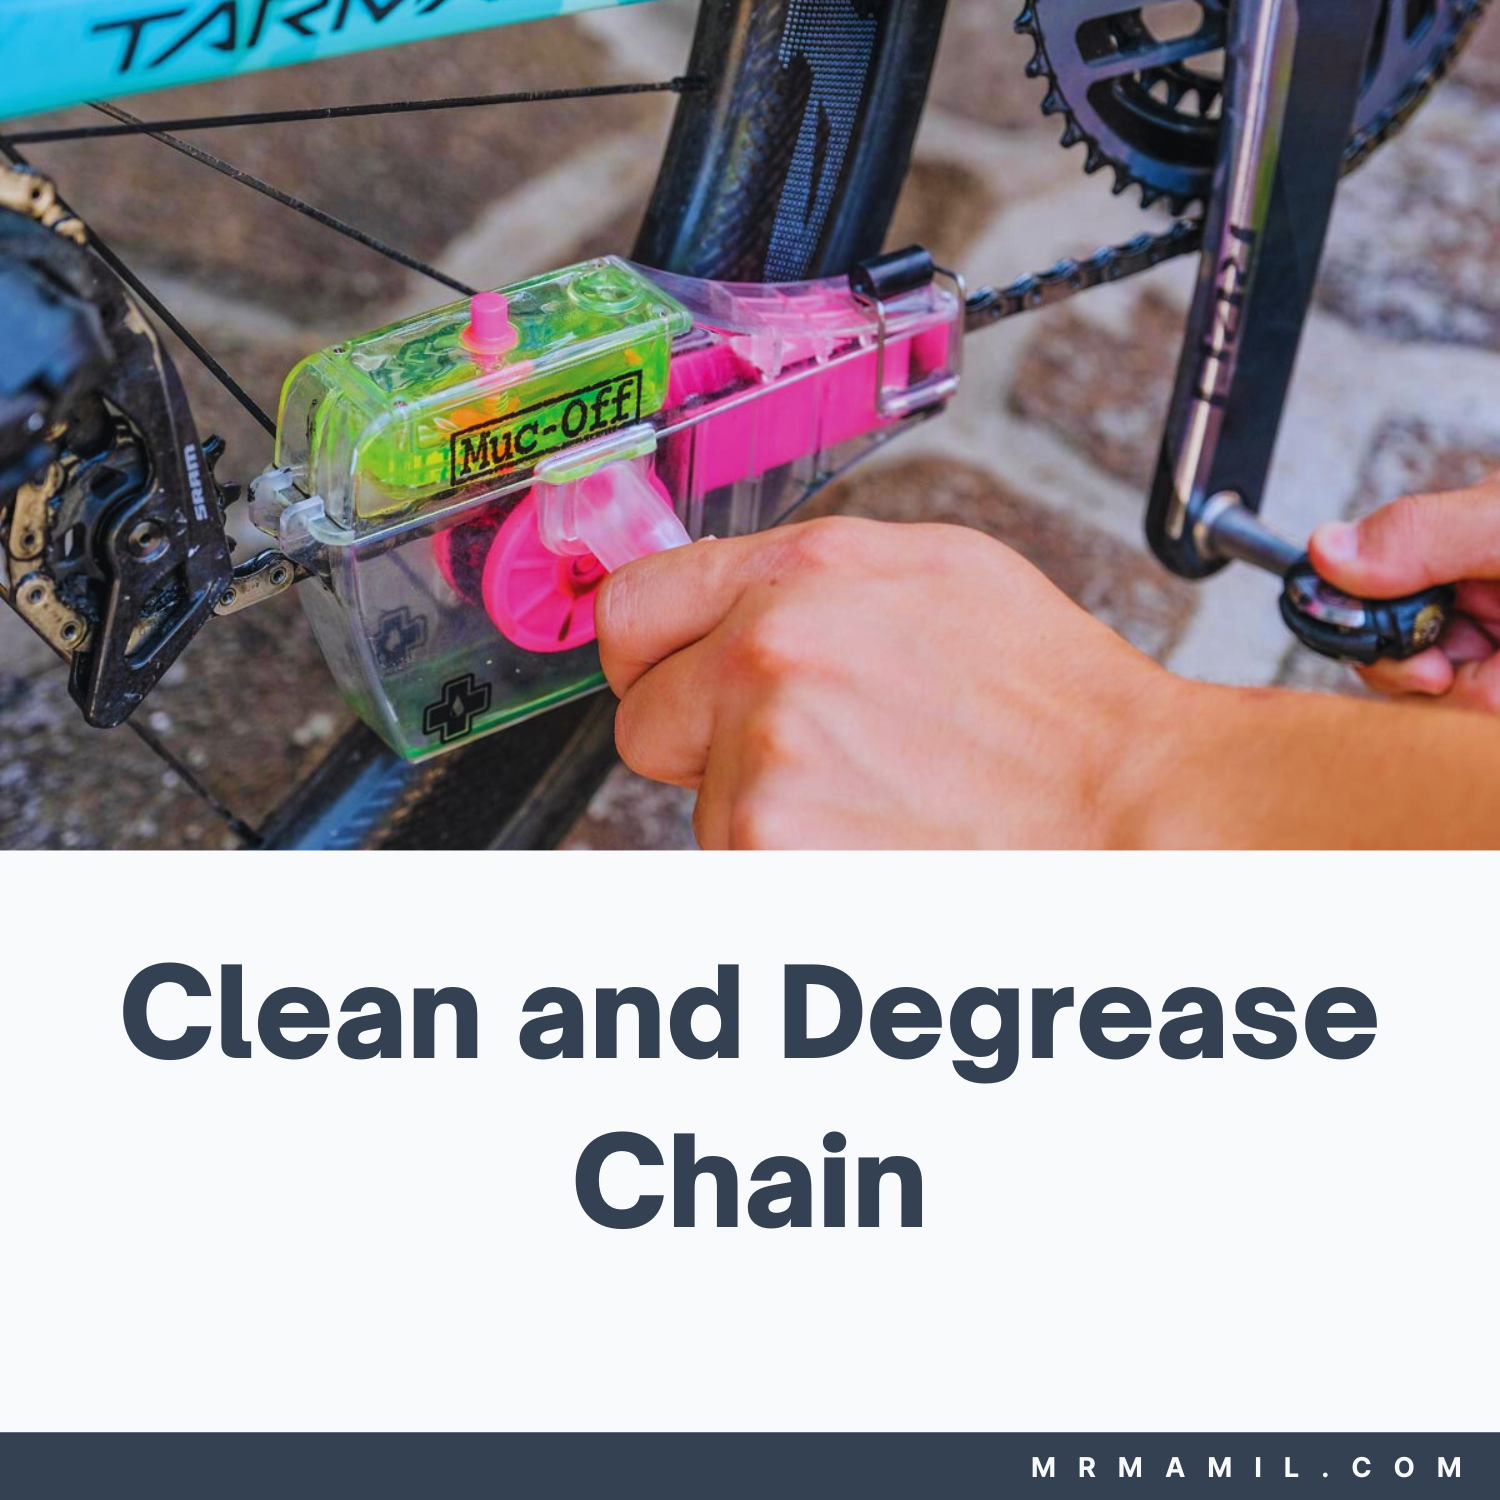 Clean and Degrease Bike Chain